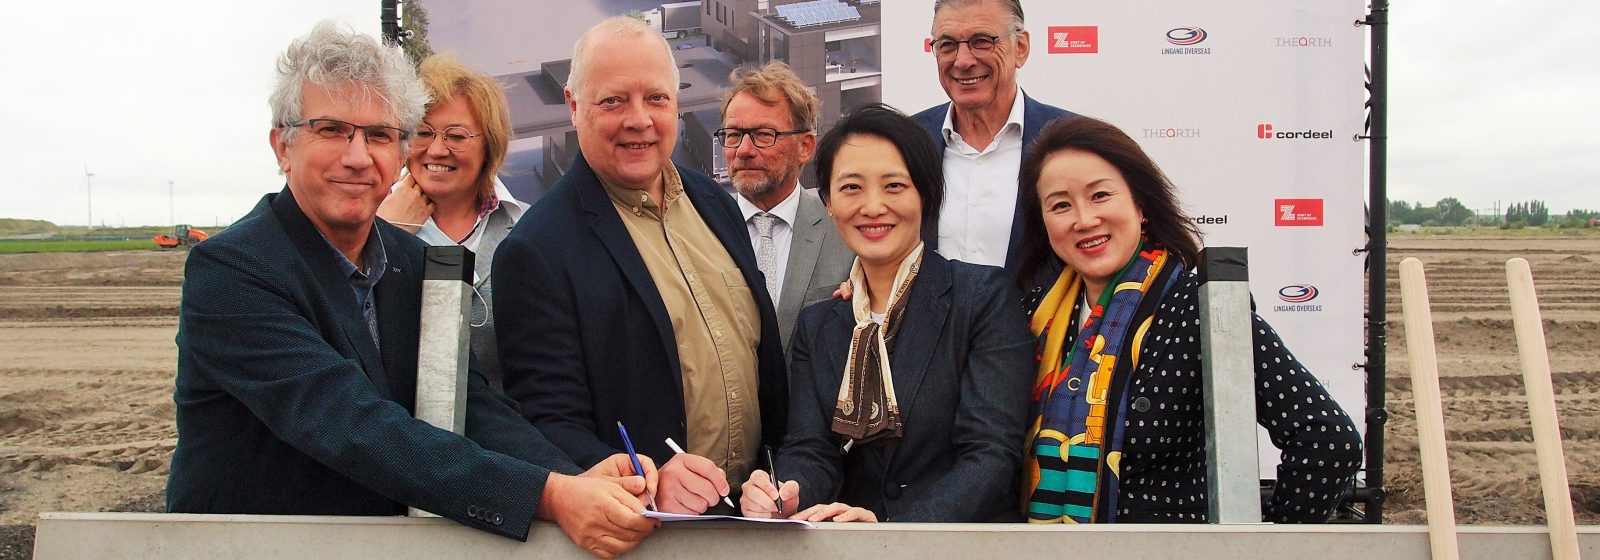 Ondertekening raamakoord bij de eerste spadesteek van Lingang in Zeebrugge